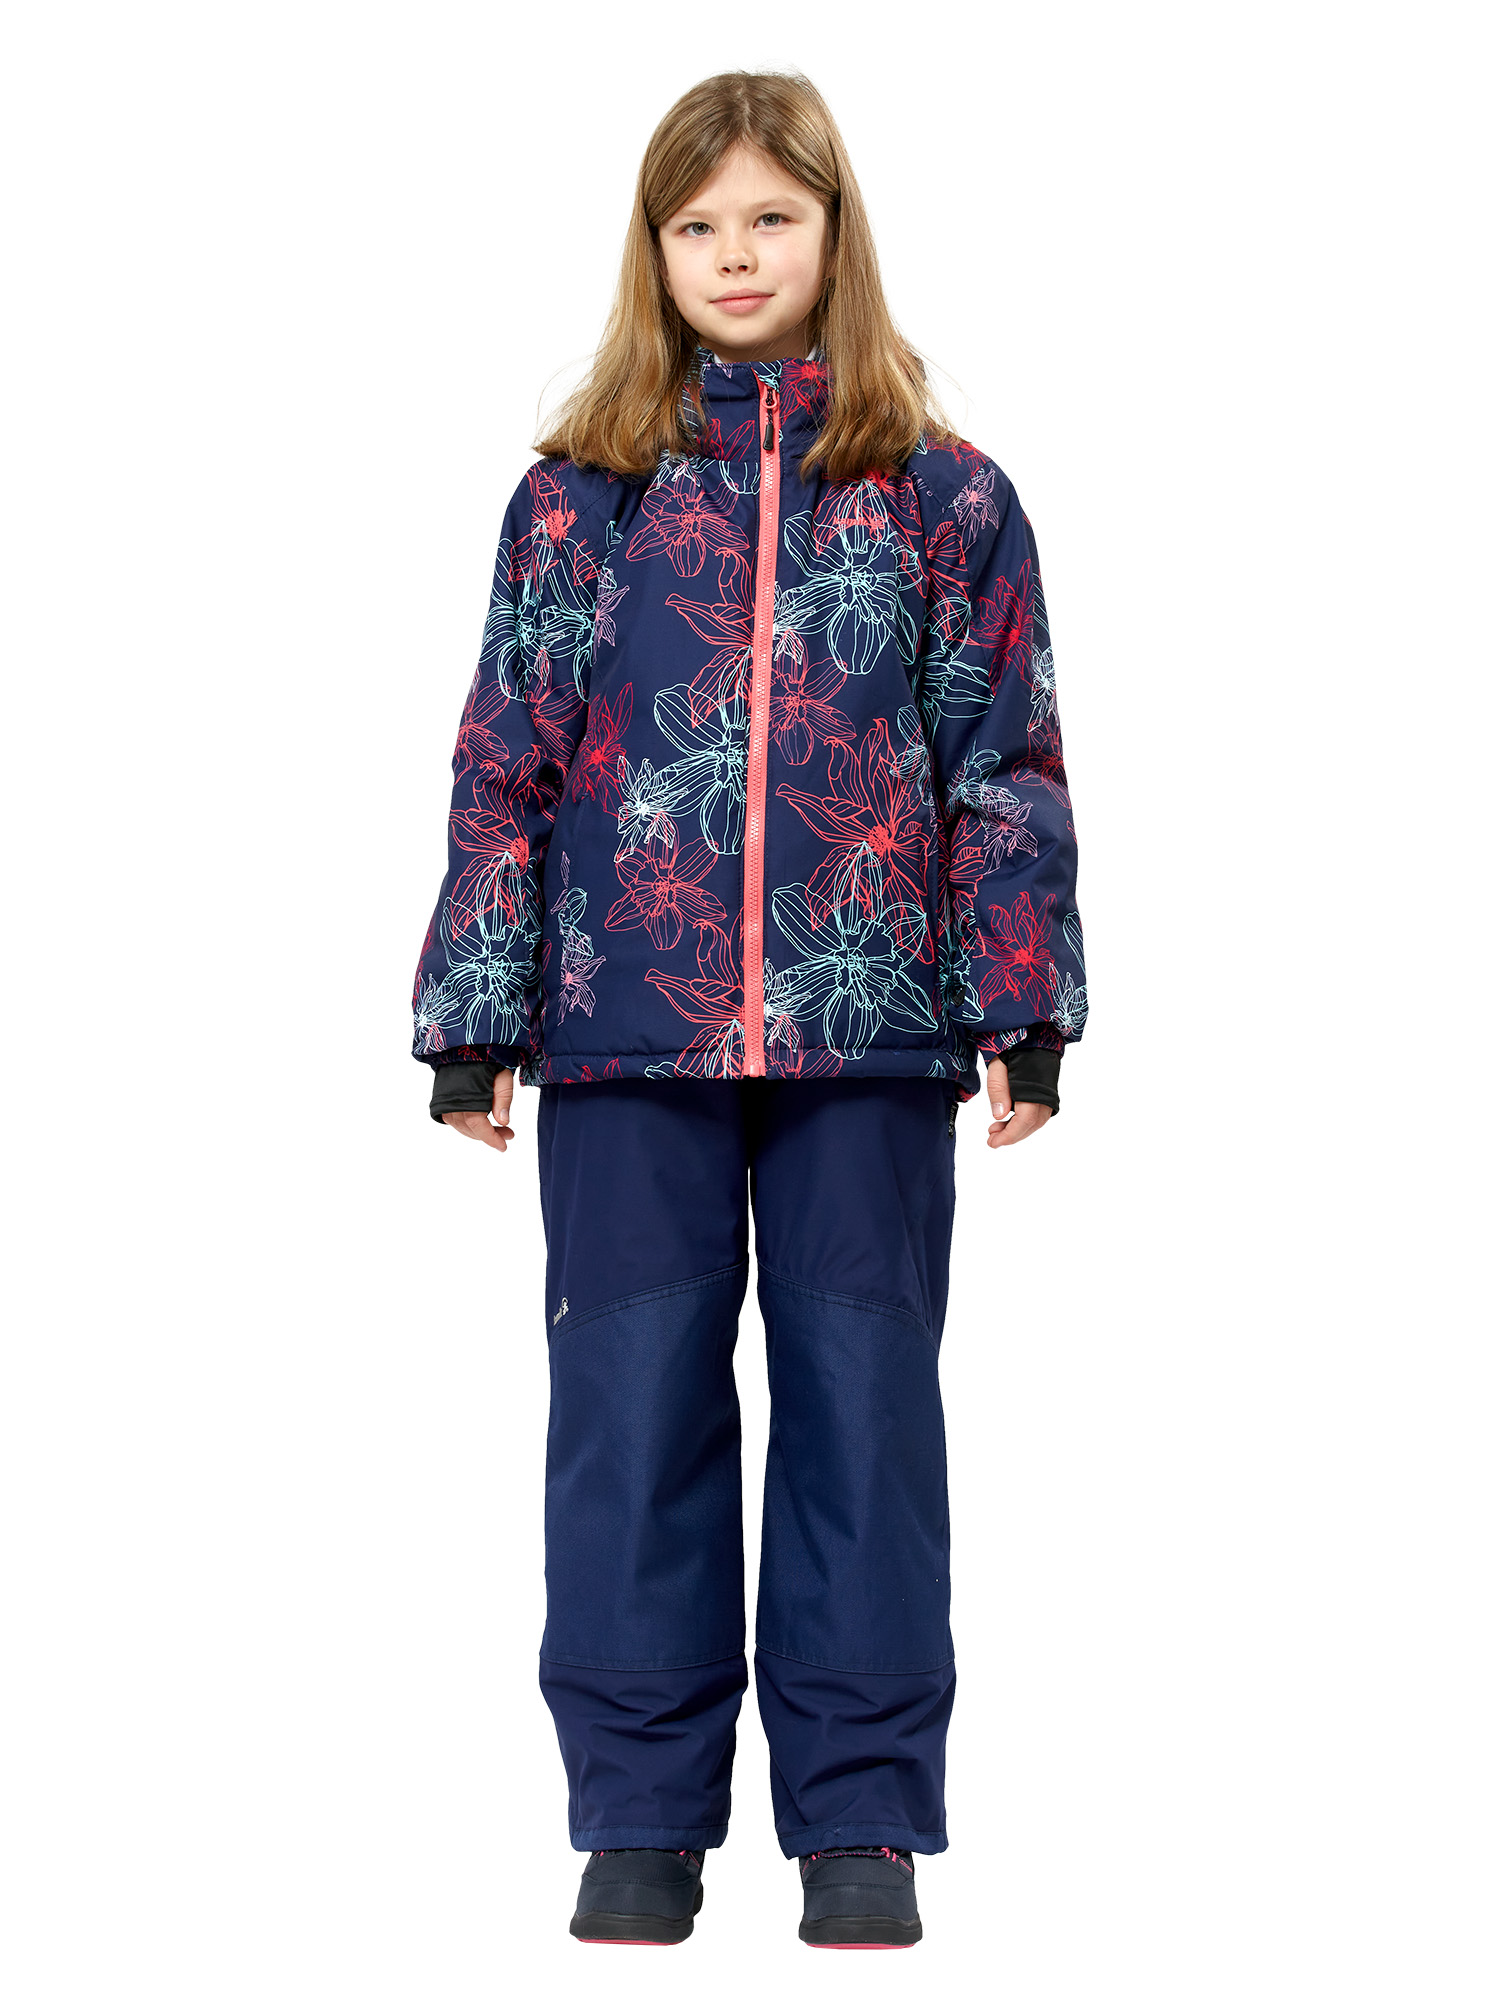 Куртка детская Tallie Leilani2 V46995_Nac, розовый, синий, 116